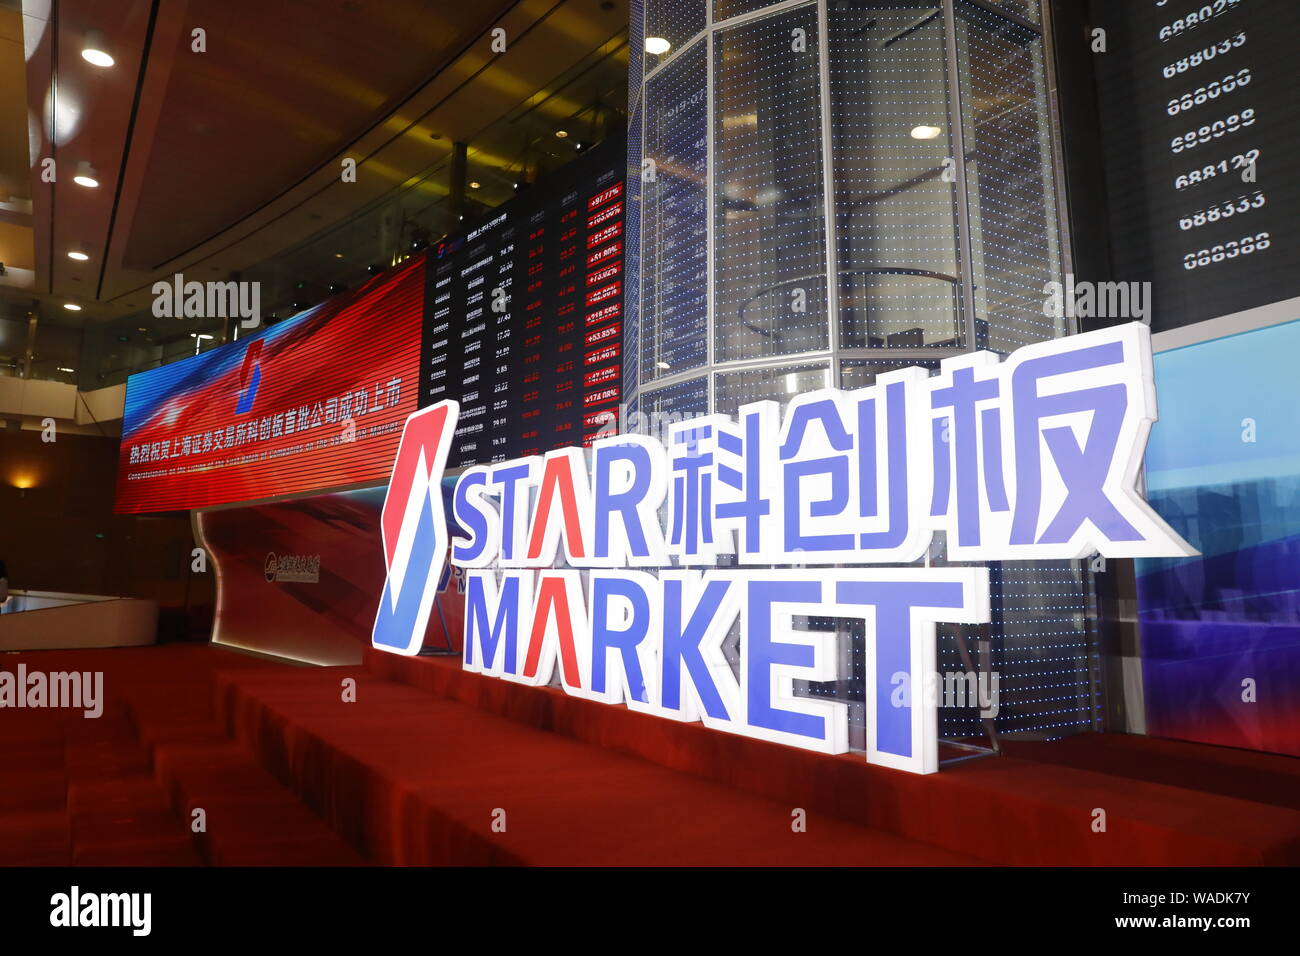 El índice bursátil y los precios de las acciones se muestran durante la ceremonia de anuncio del primer lote de compañías en el mercado estrella de SSE en Shanghai, Chi Foto de stock